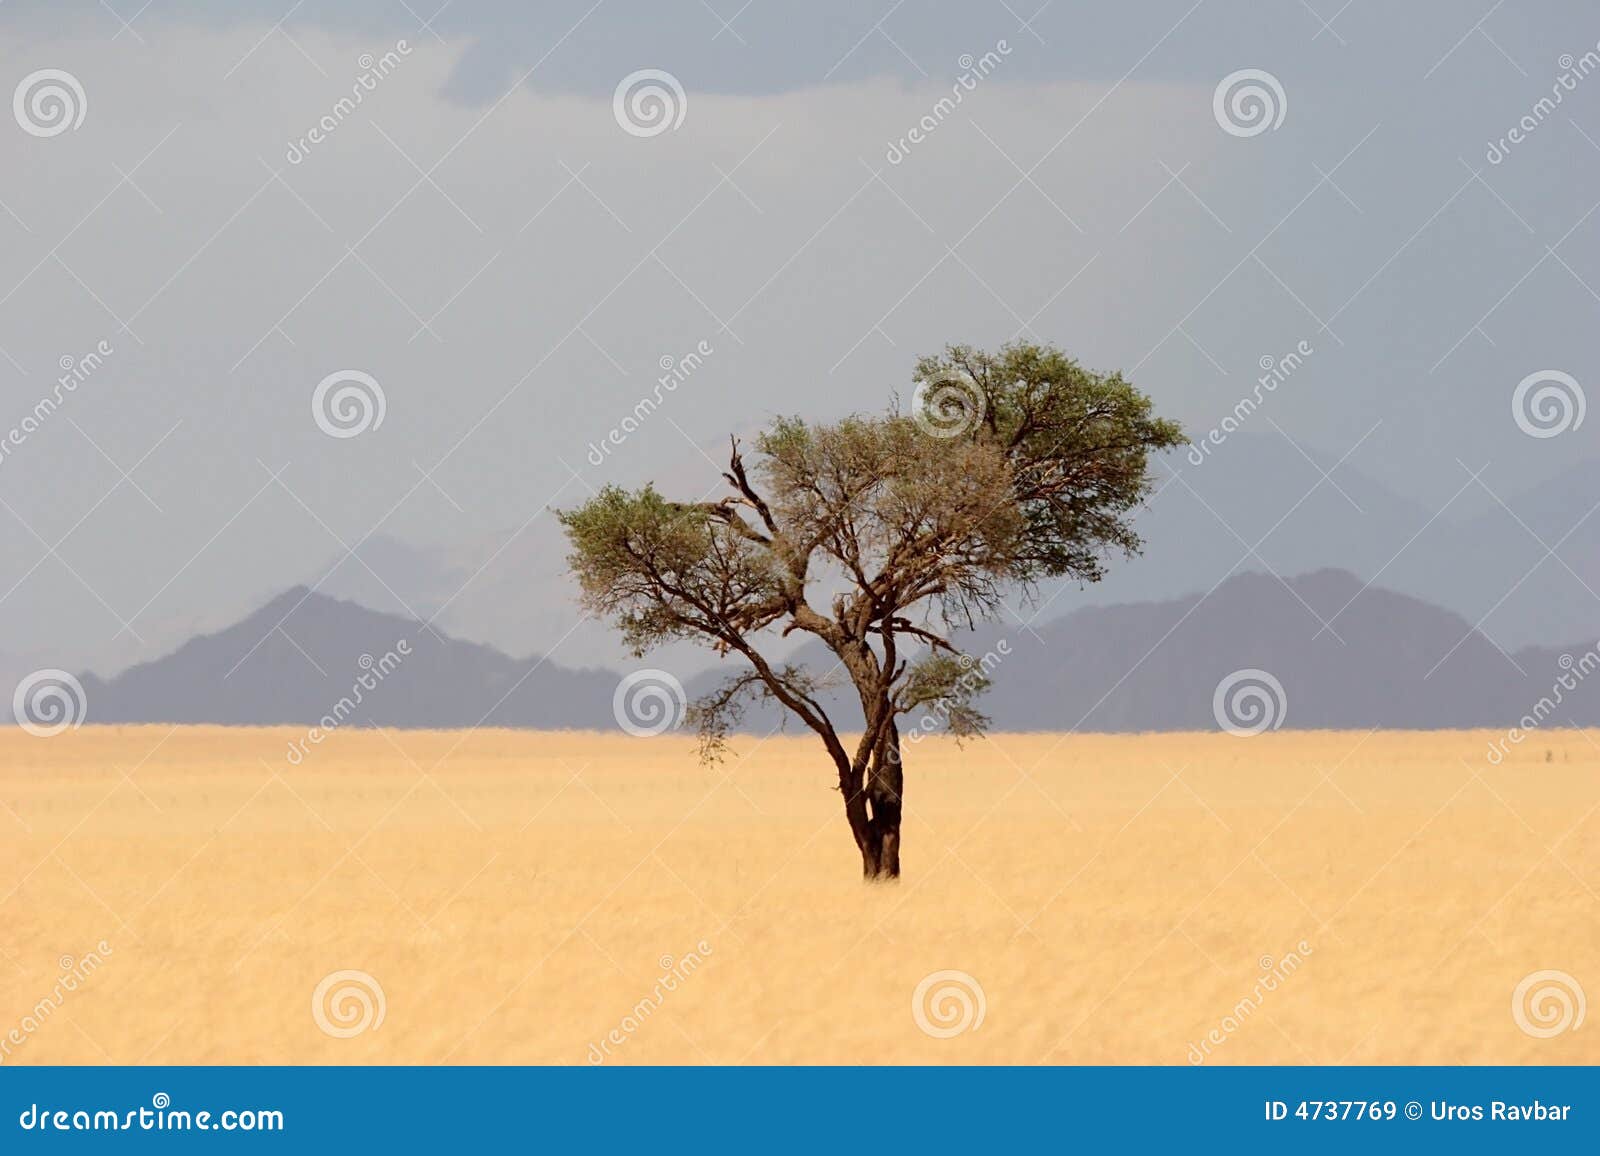 solitude desert tree